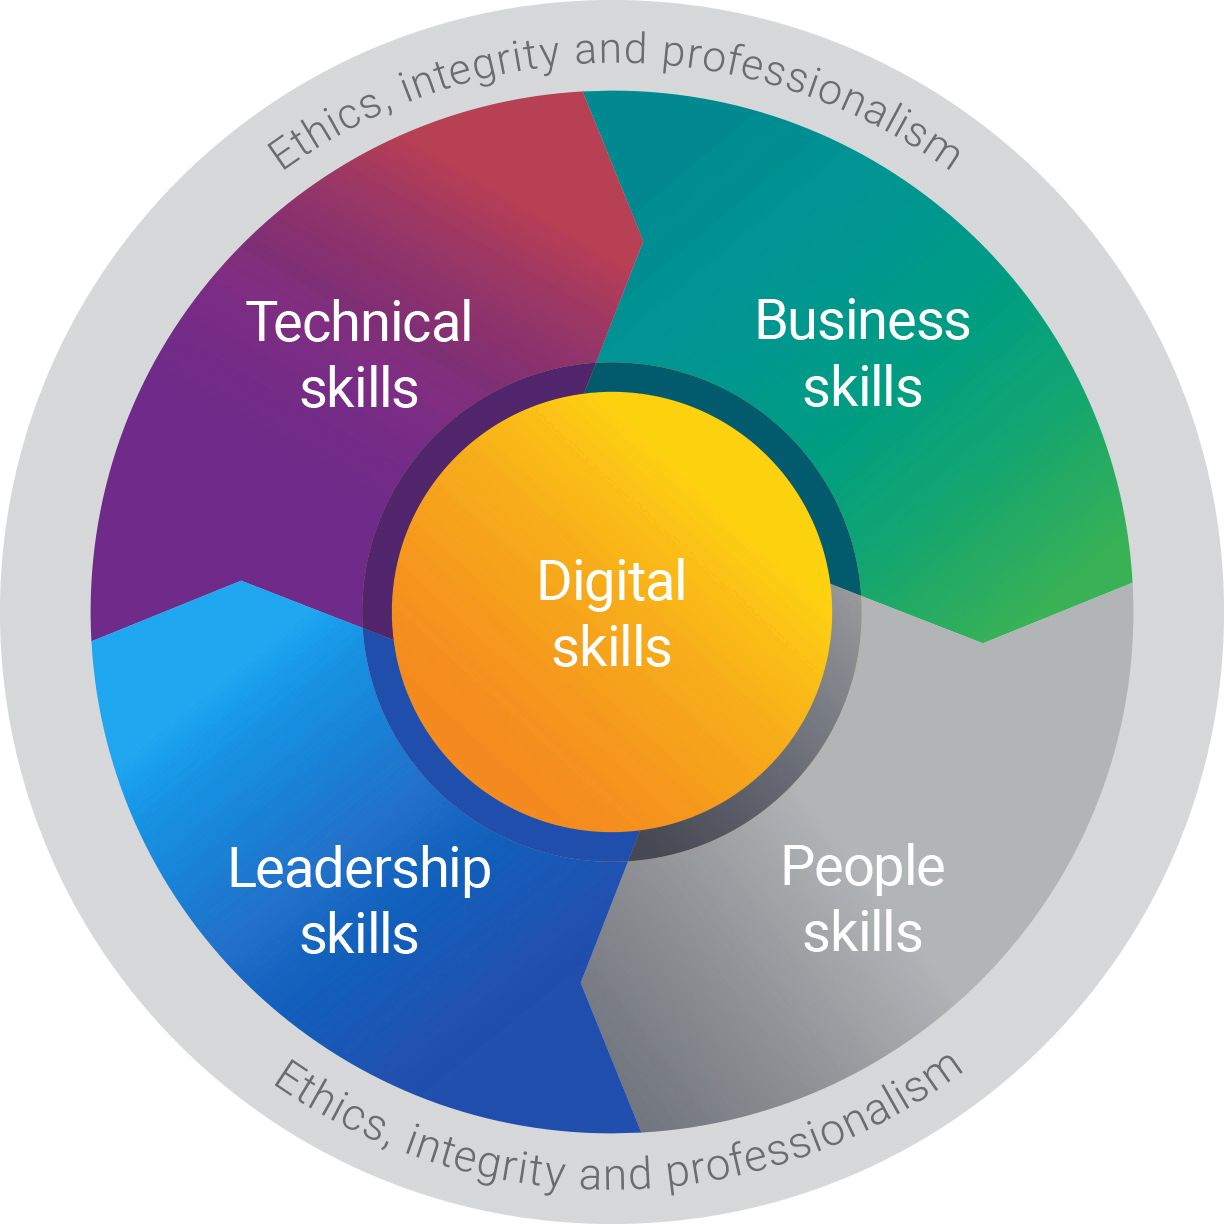 Digital skills meet people skills